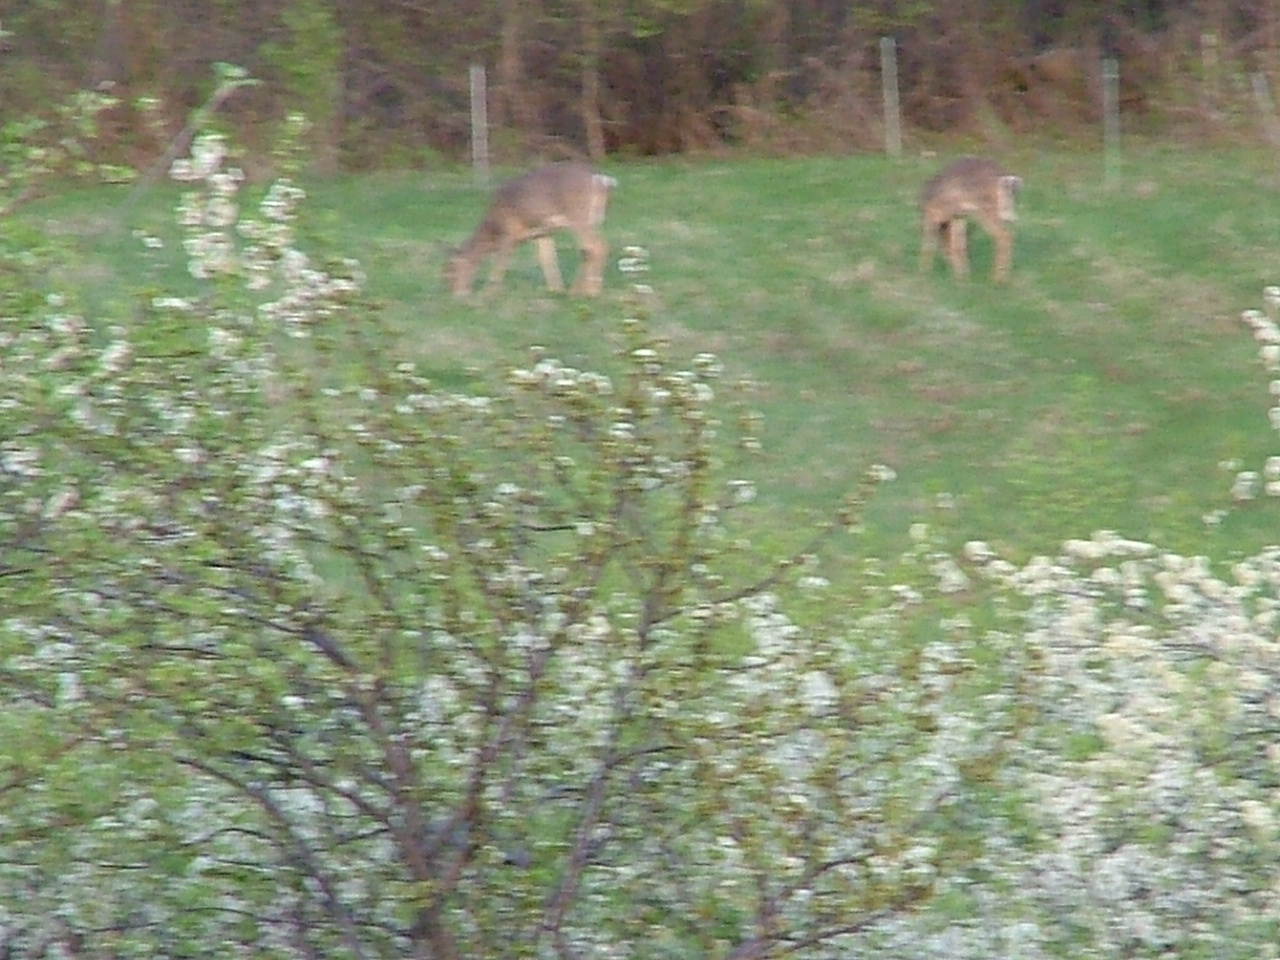 Deer behind our house